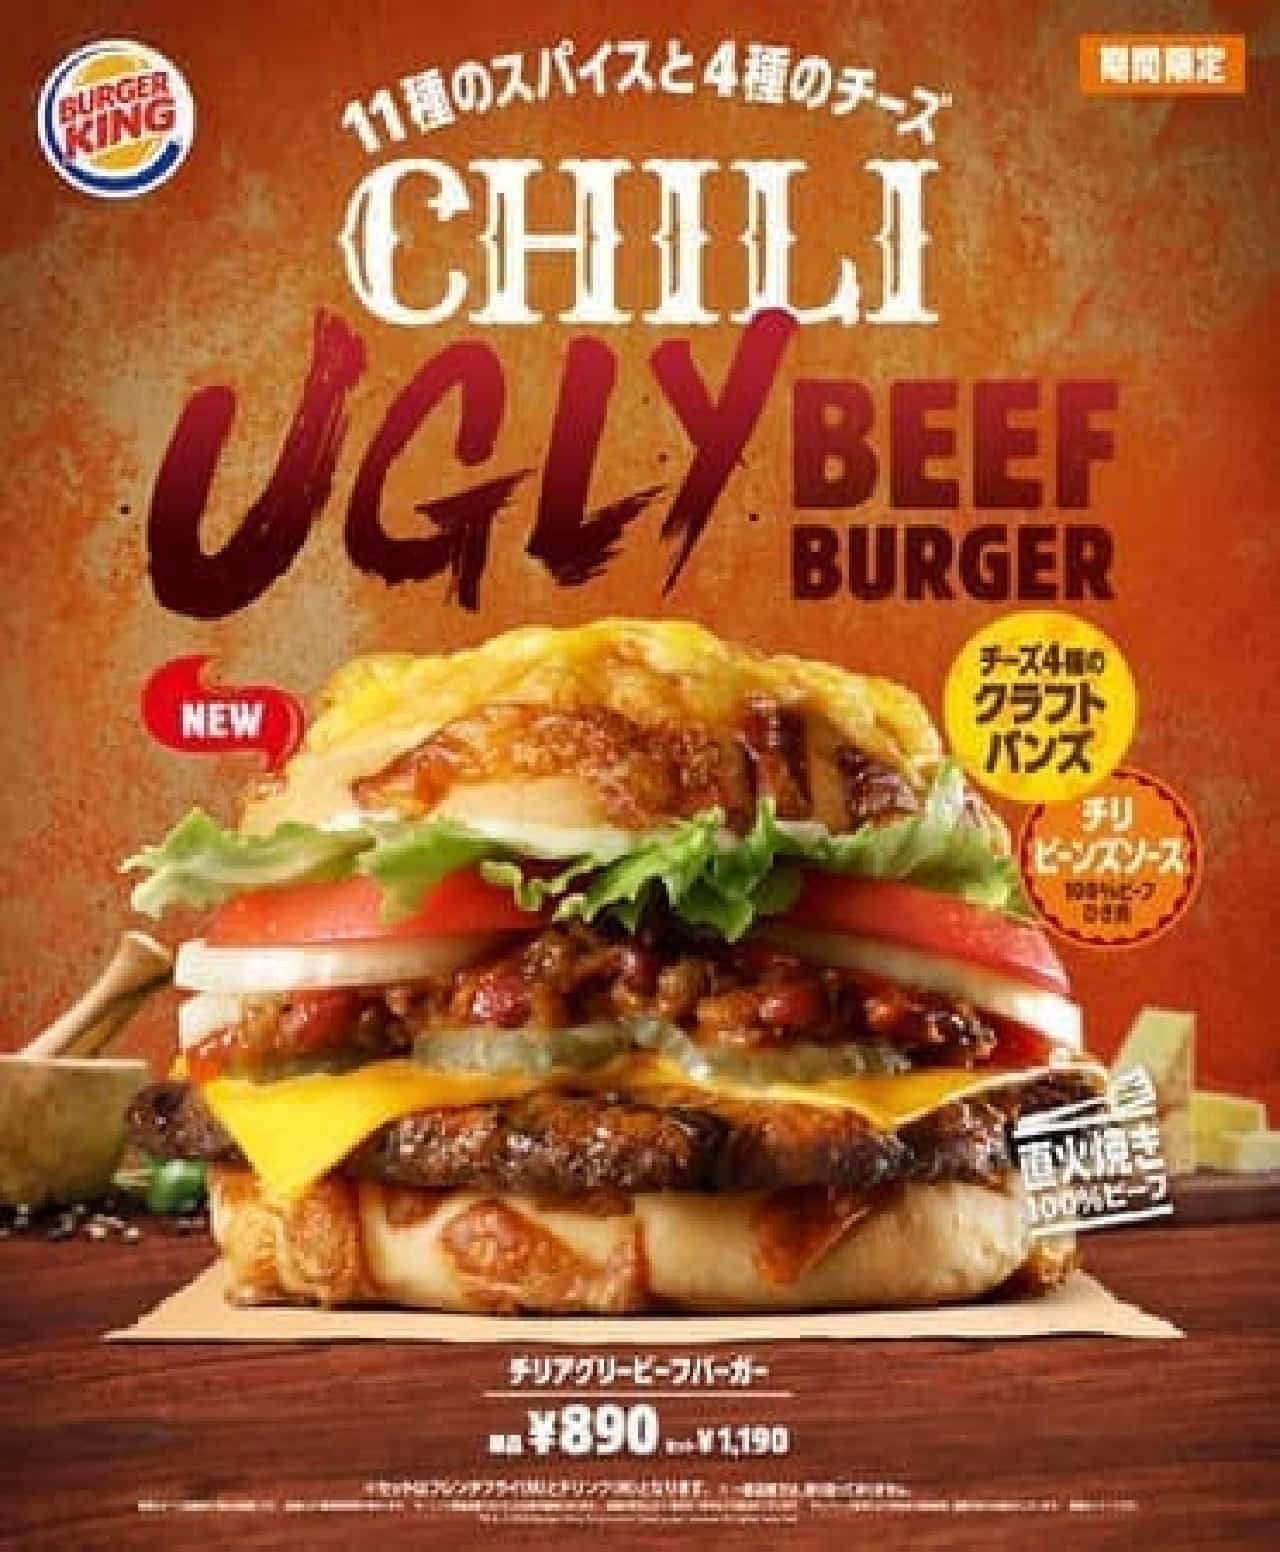 Cilia Gree Beef Burger Burger King